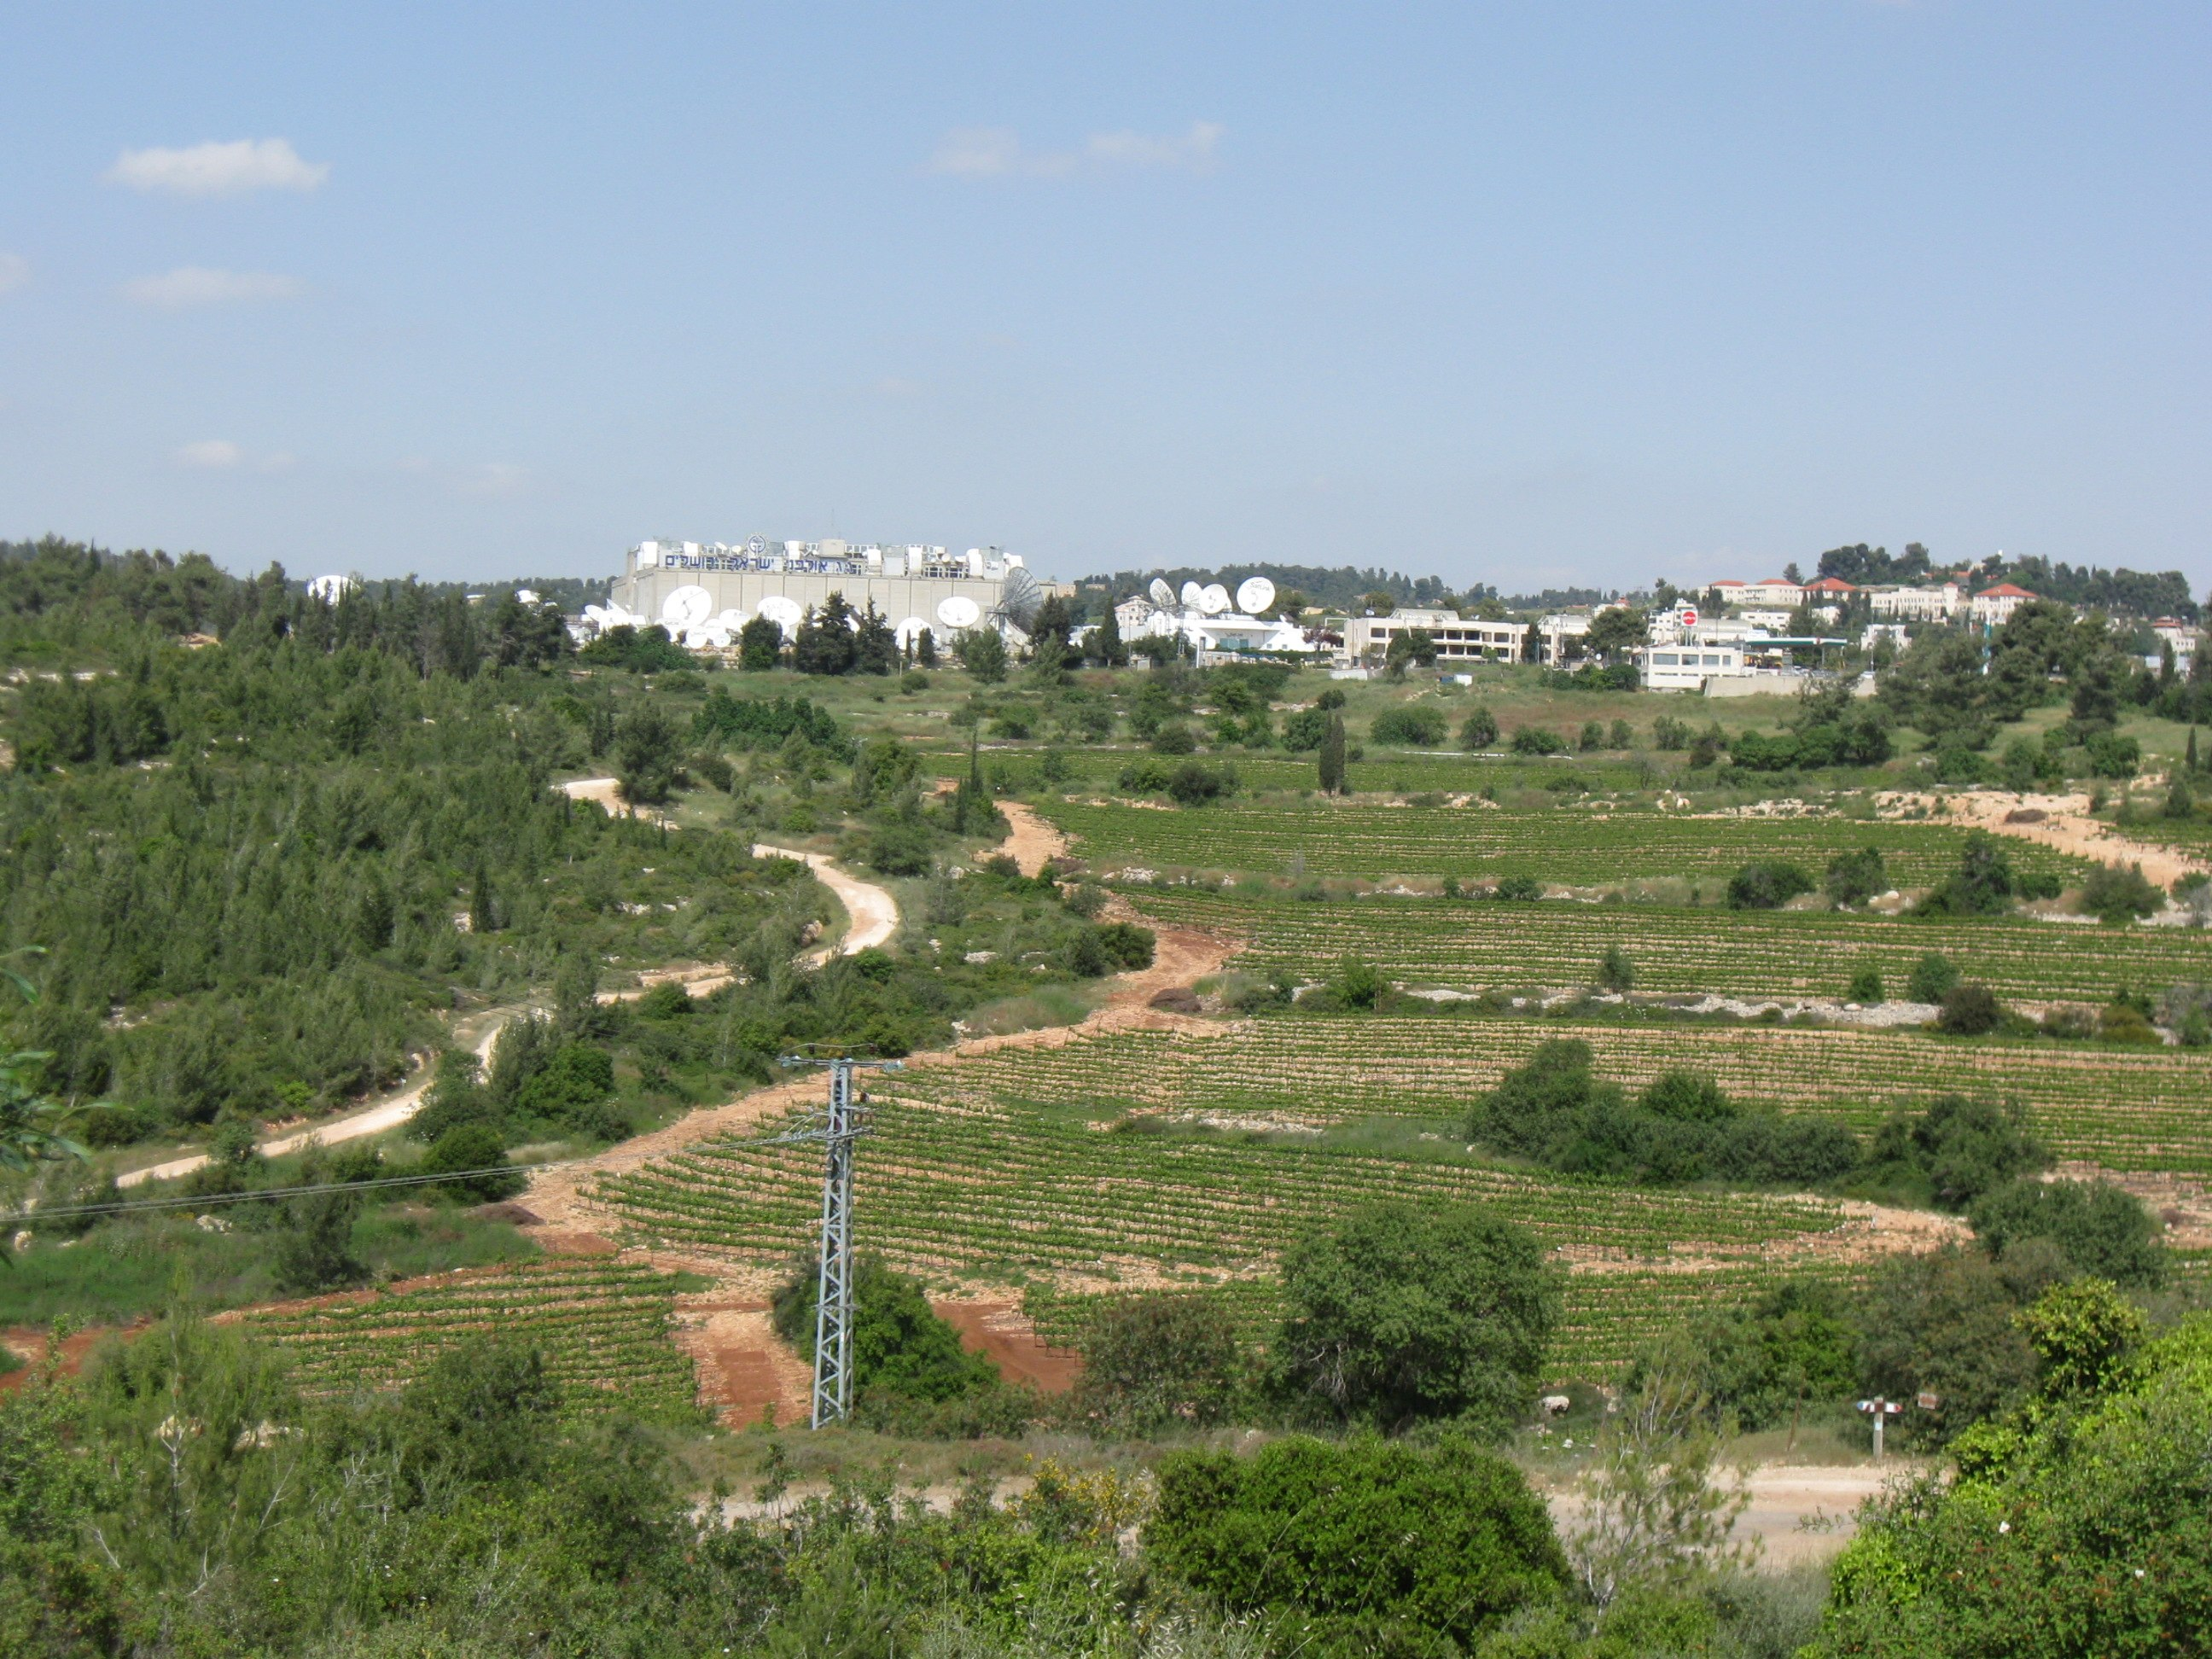 Nehemia de Lieme Park